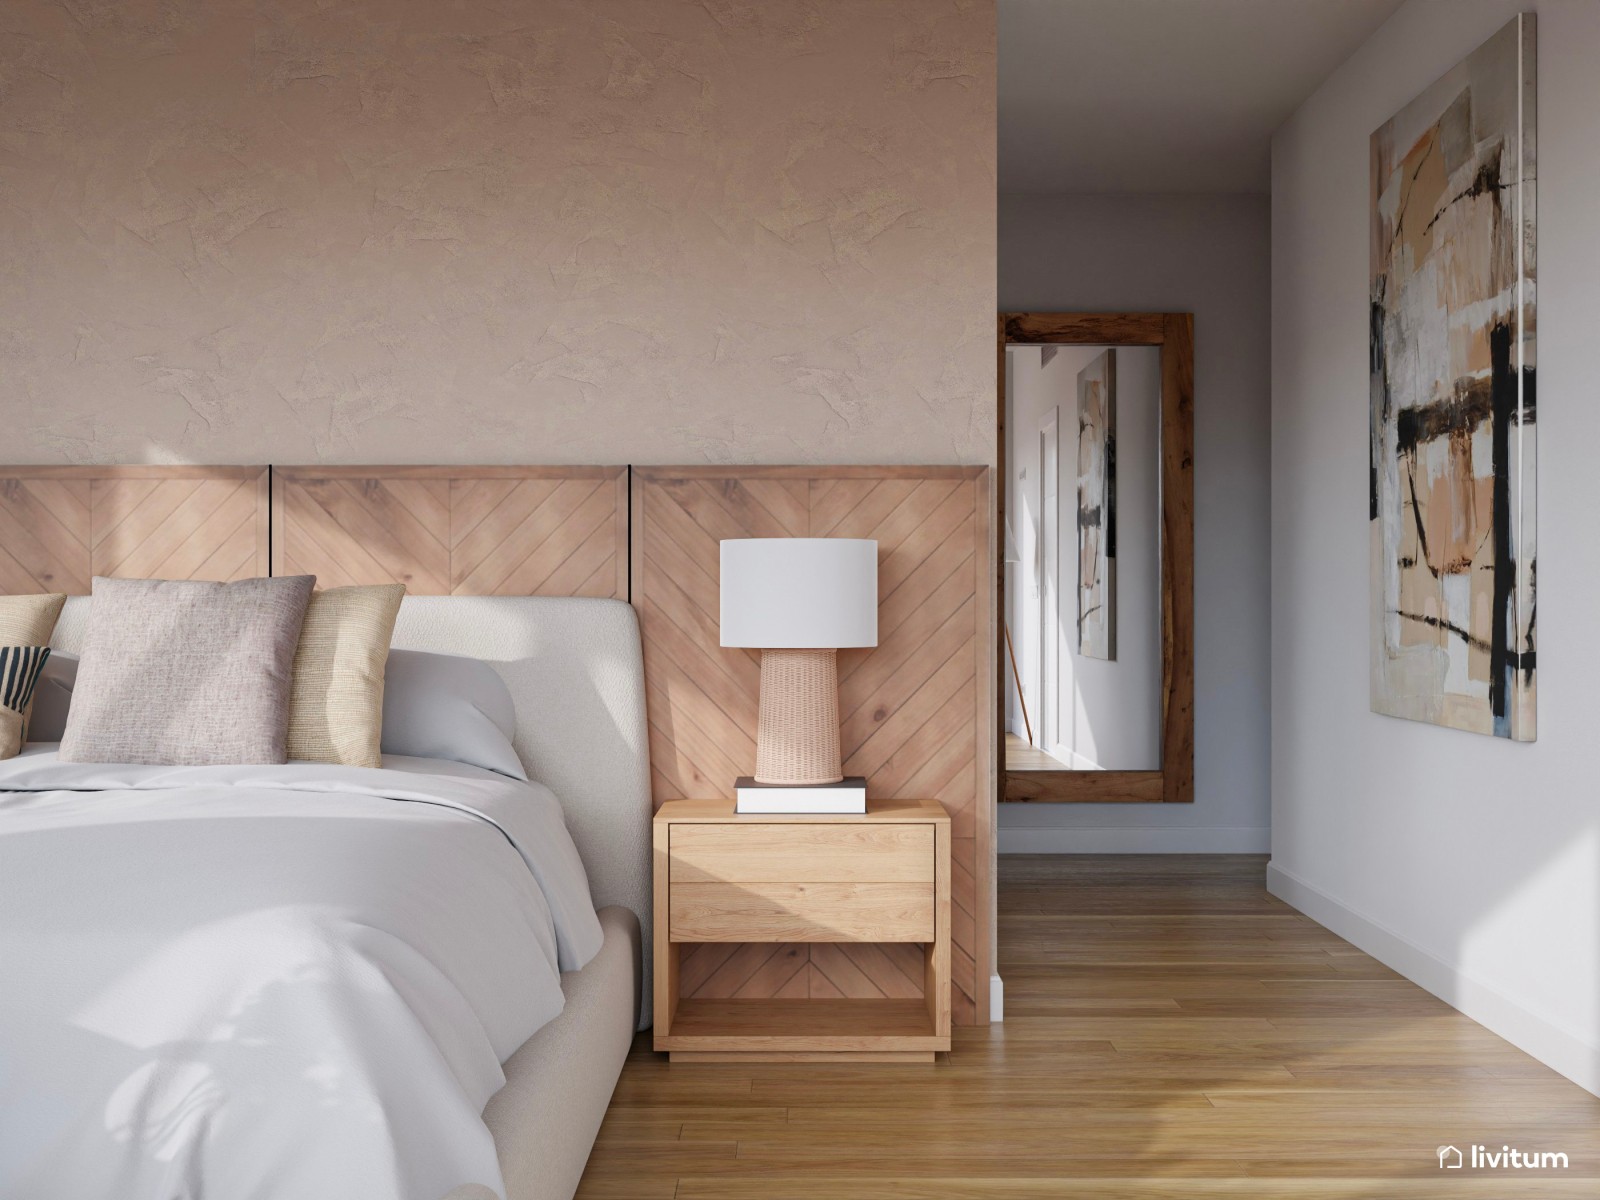 Bonito y acogedor dormitorio con cabecero de madera espiga